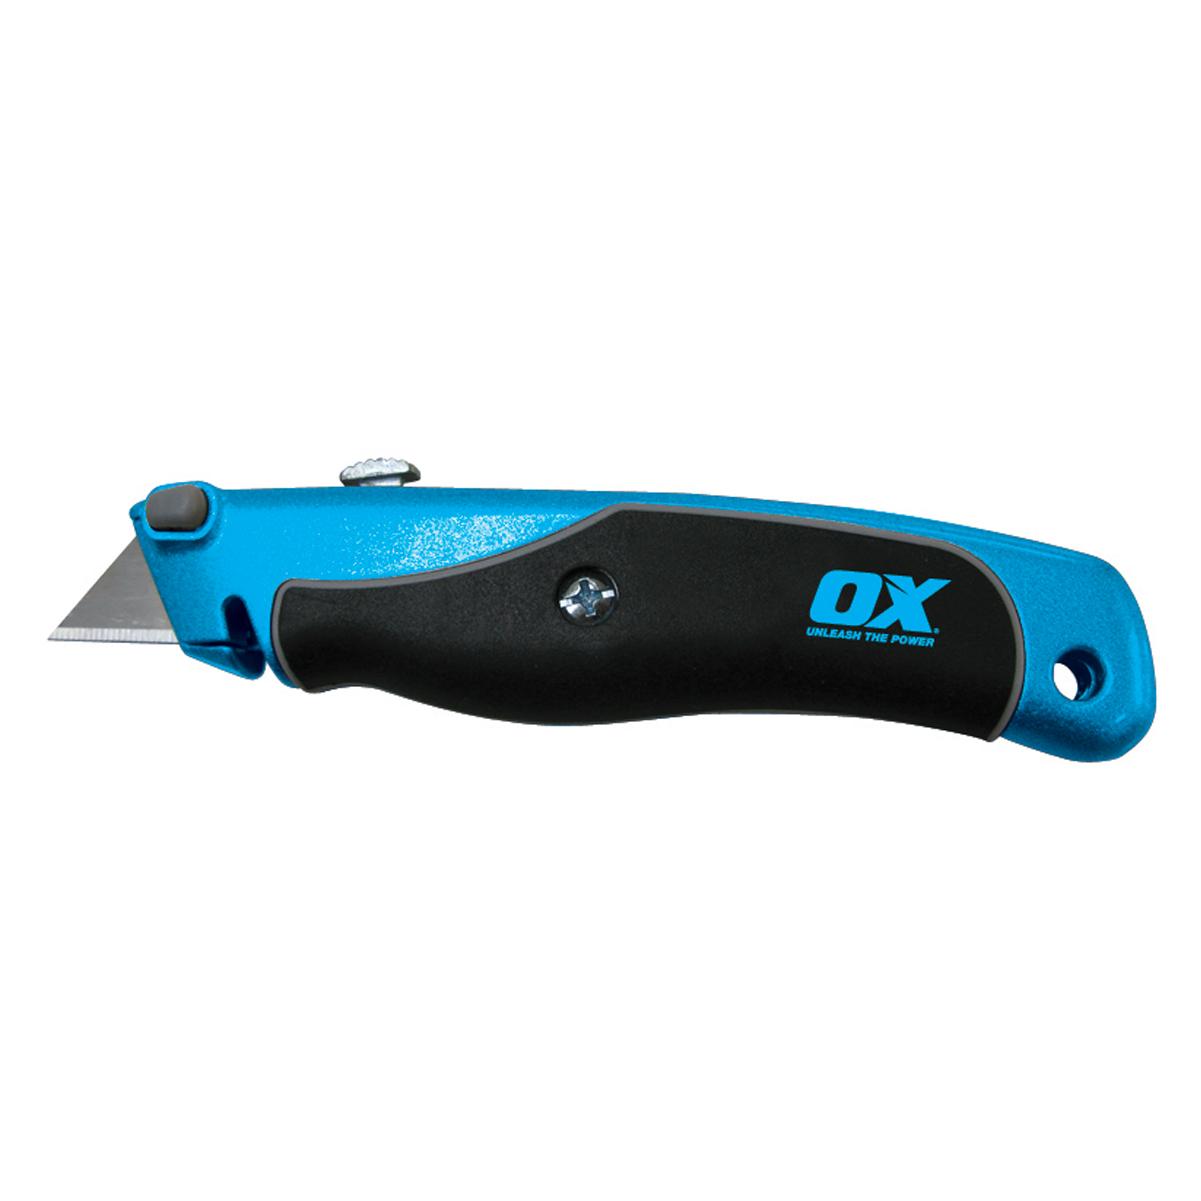 Ox Soft Grip Utility Knife